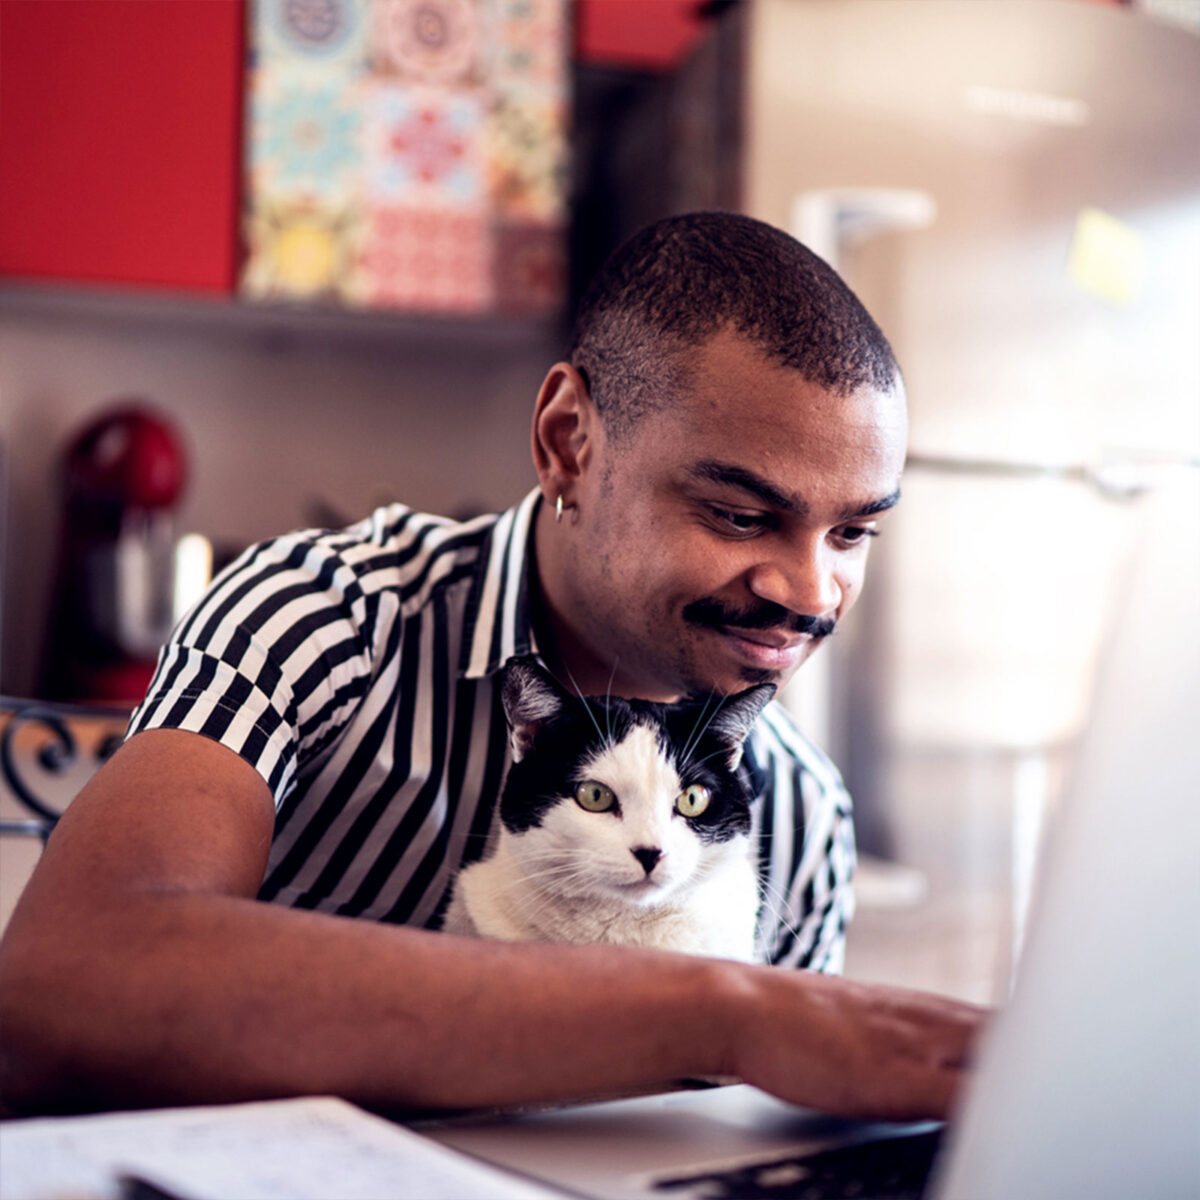 Mann mit Katze auf dem Schoss in Küche am Laptop